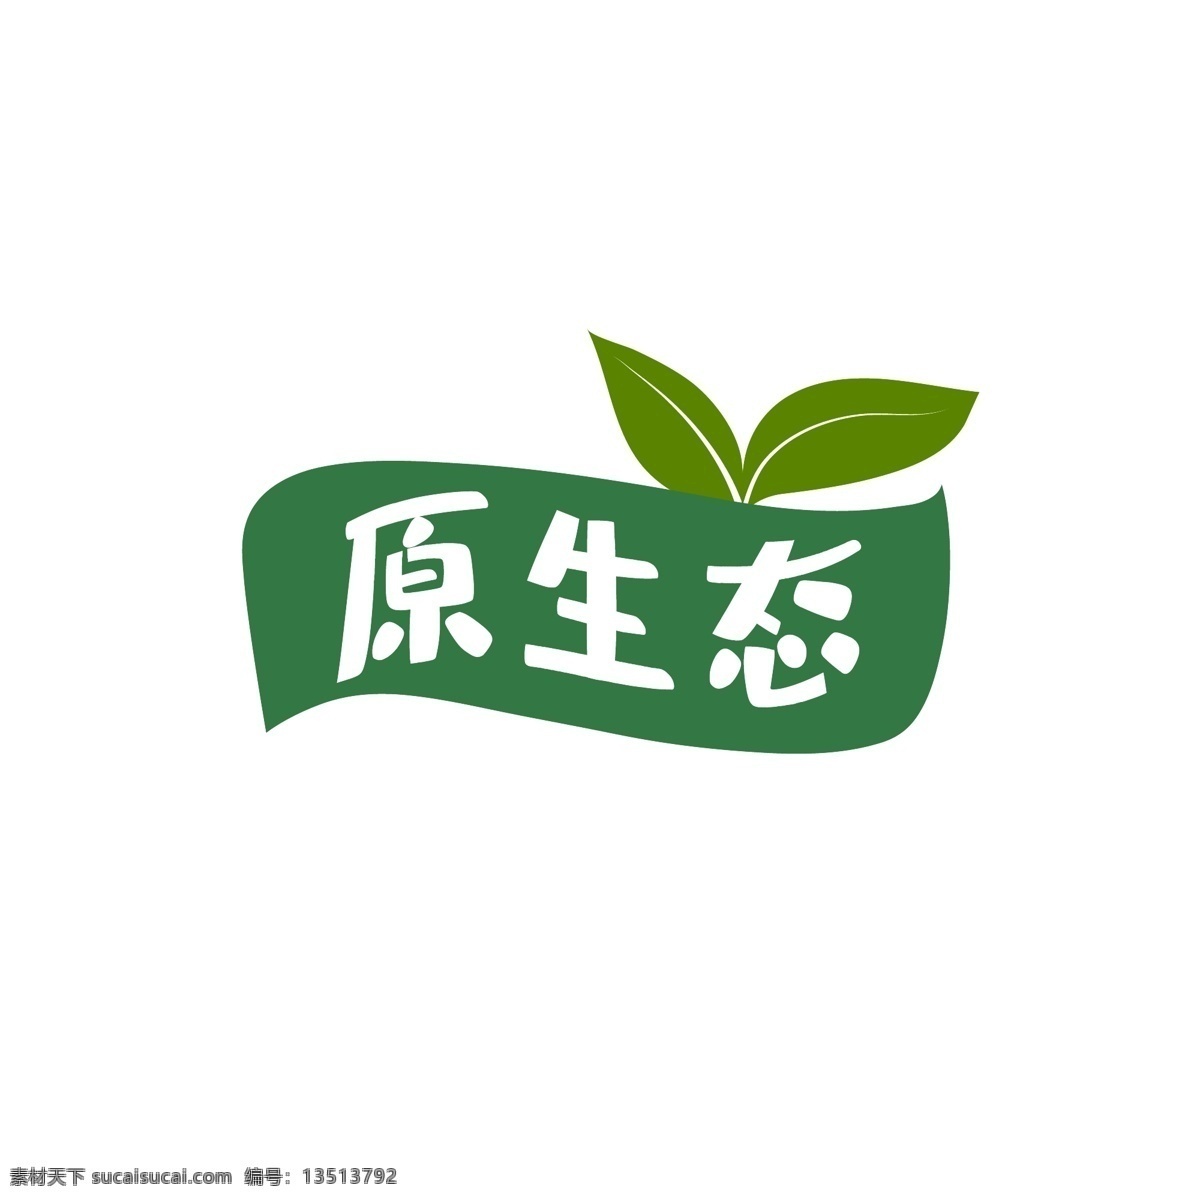 有机 矢量素材 food logo 白色 标签图标 标识标志 标志 鸡肉 绿叶 有机绿色标签 有机绿色 有机食品标签 食品标签 绿色 标签 绿色素材 标签素材